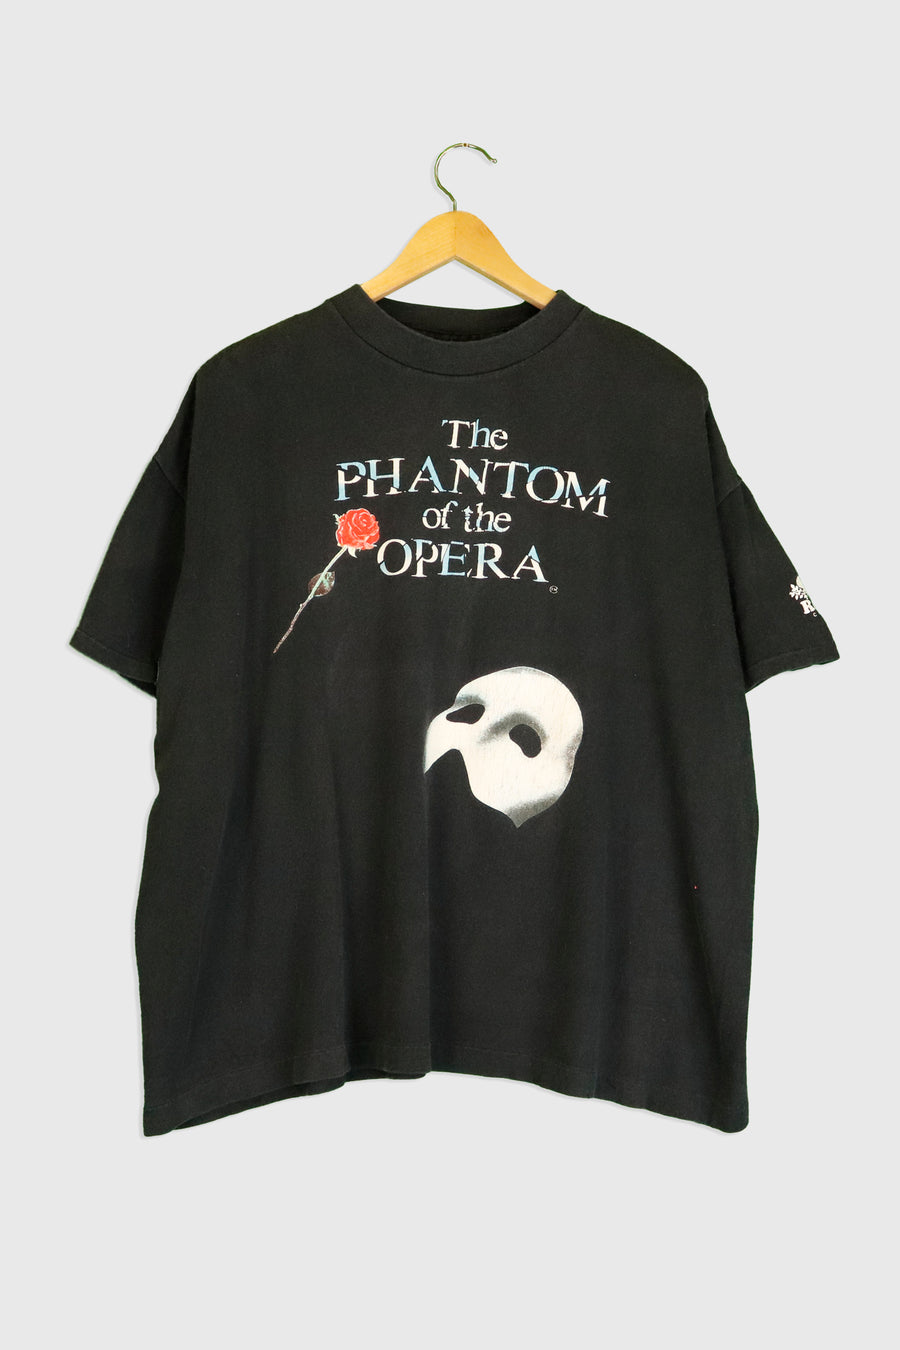 Vintage Roots Phantom Of The Opera Vinyl T Shirt Sz XL